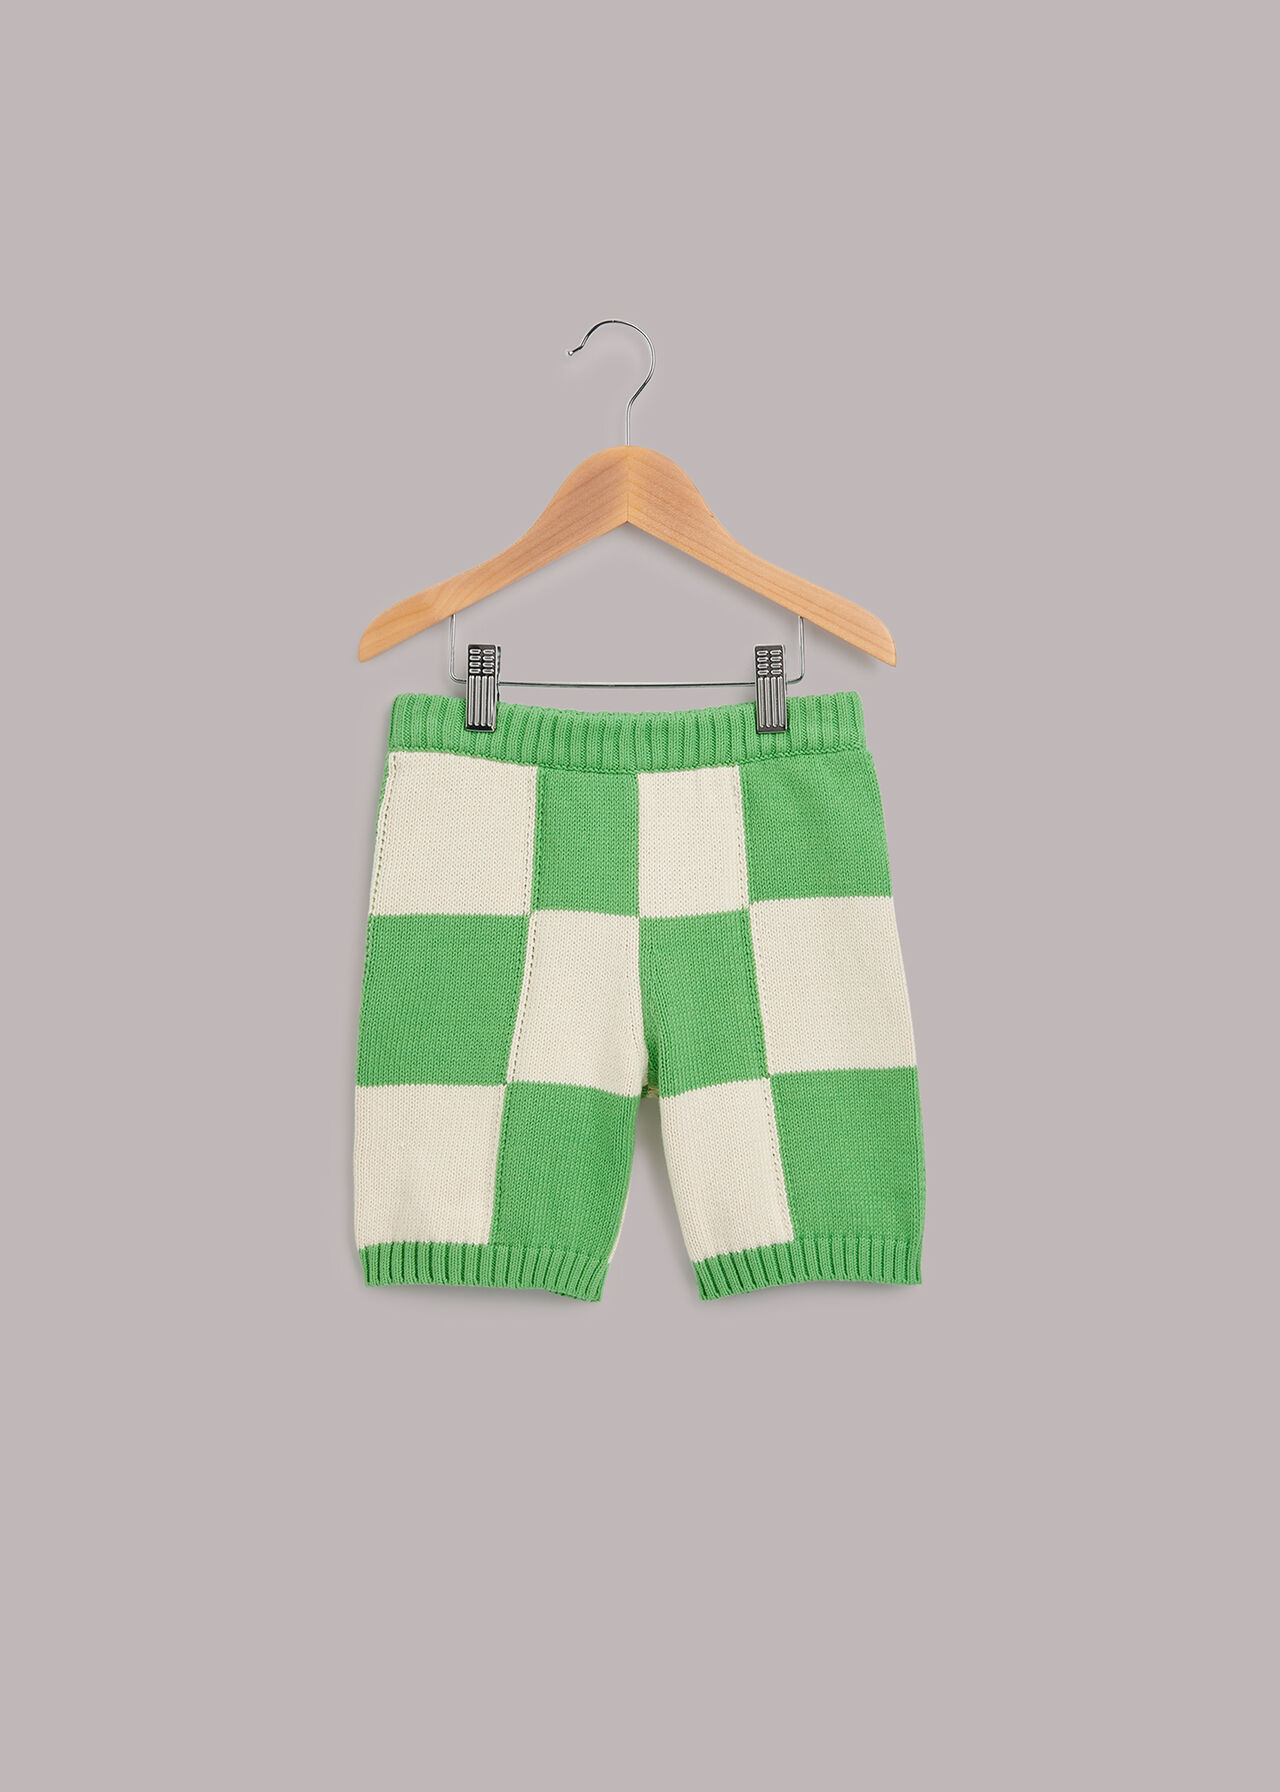 Checkerboard Knit Shorts